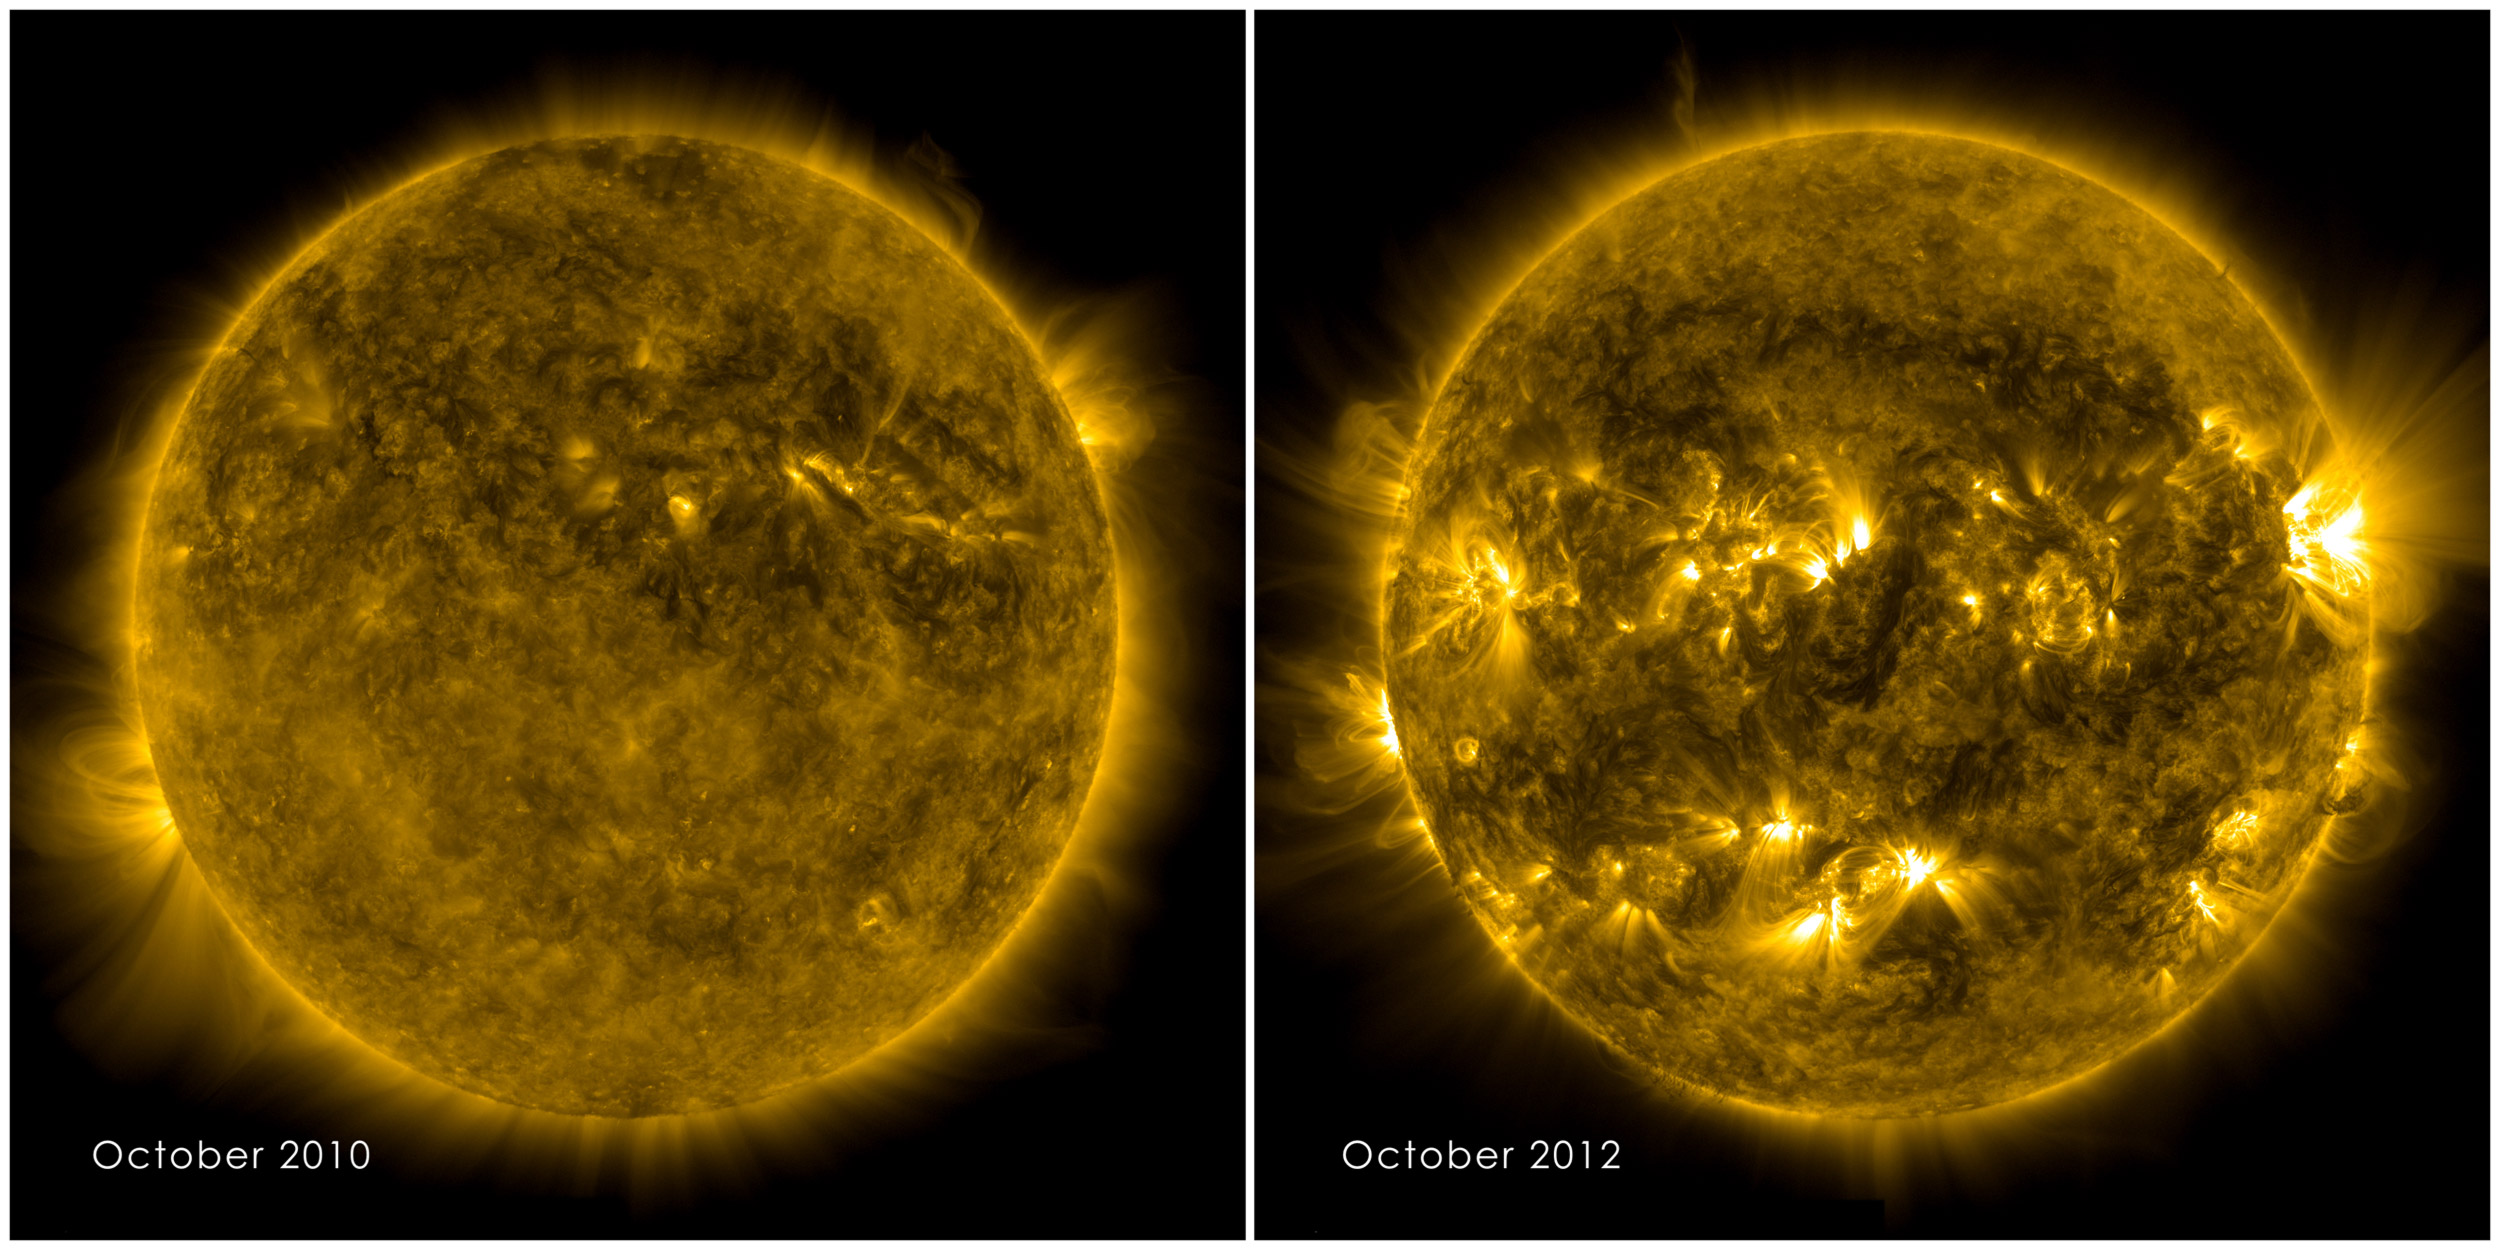 Cette image illustre bien l’activité du Soleil, qui se traduit par une variété de phénomènes qui varient de façon cyclique (11 ans), en fréquence et en intensité. Les taches solaires, bien plus nombreuses sur l’image de droite, en sont l’exemple le plus concret. © Nasa/ SDO Science team